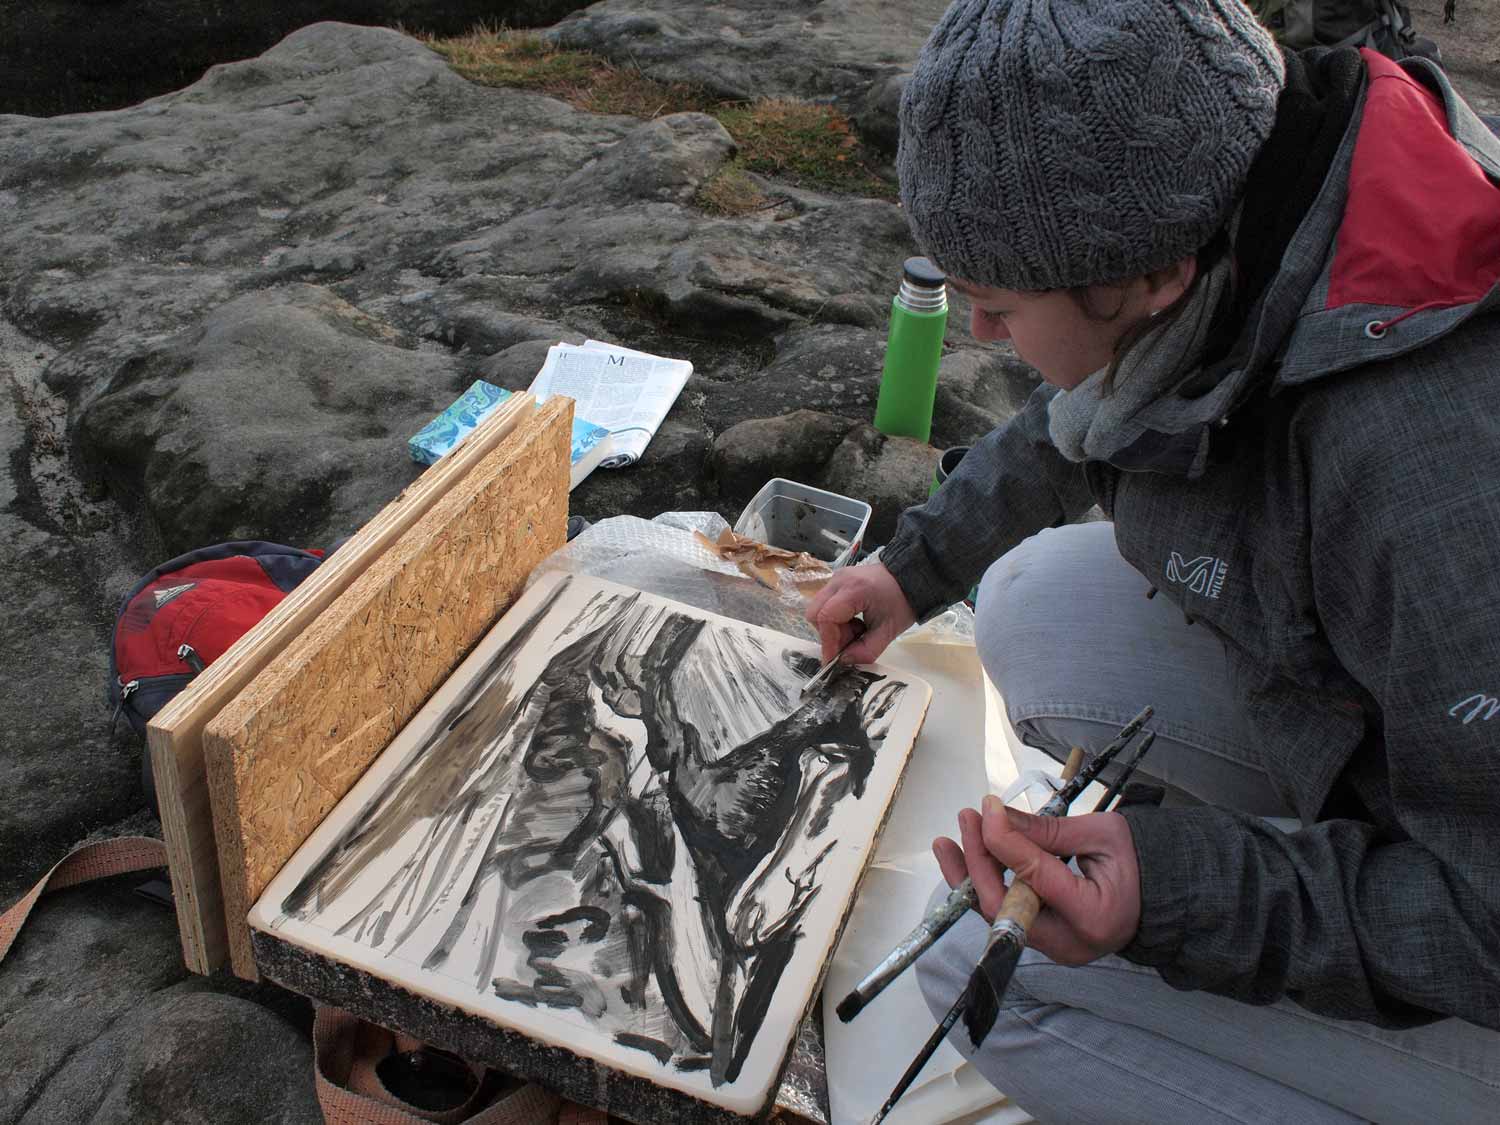 Künstlerin Yvette Kießling bei der Bearbeitung eines Lithographie-Steines mit Pinseln in der linken Hand auf felsigem Untergrund.